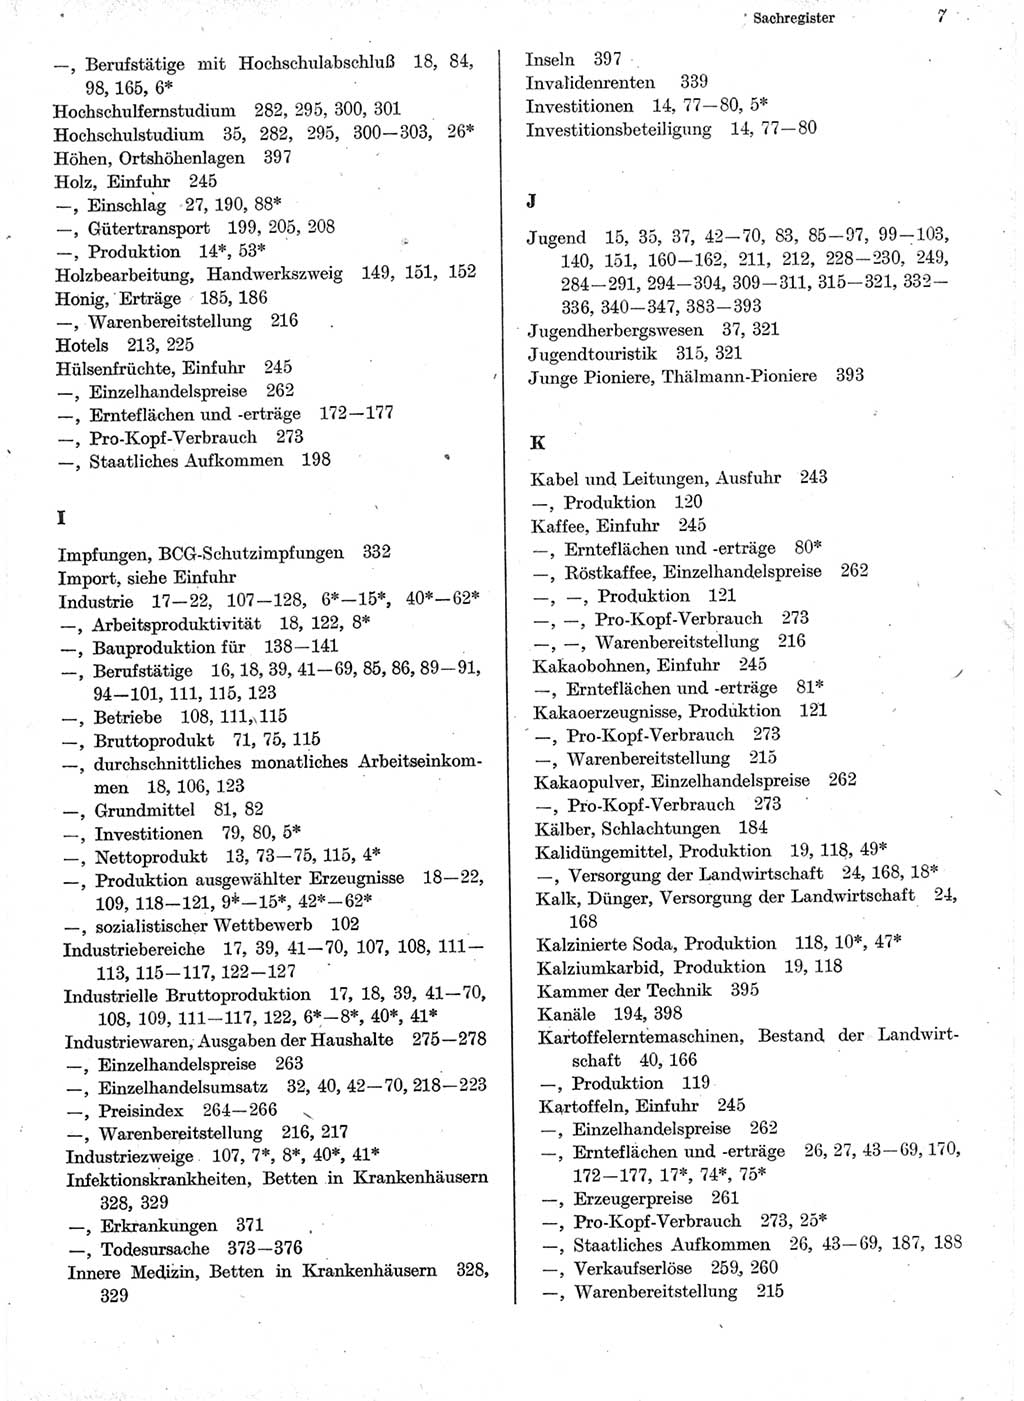 Statistisches Jahrbuch der Deutschen Demokratischen Republik (DDR) 1978, Seite 7 (Stat. Jb. DDR 1978, S. 7)